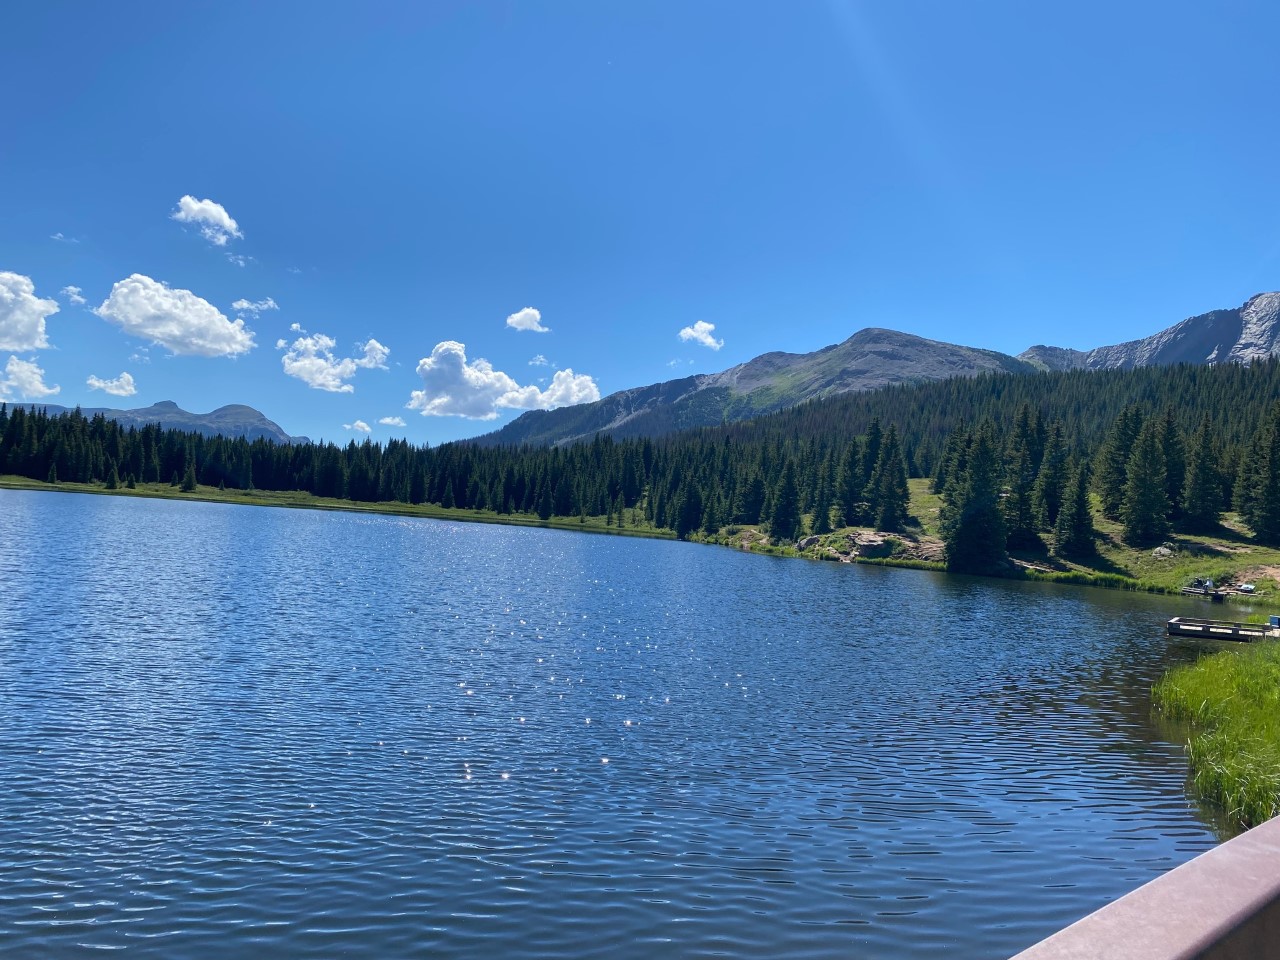 Andrews Lake - so serene